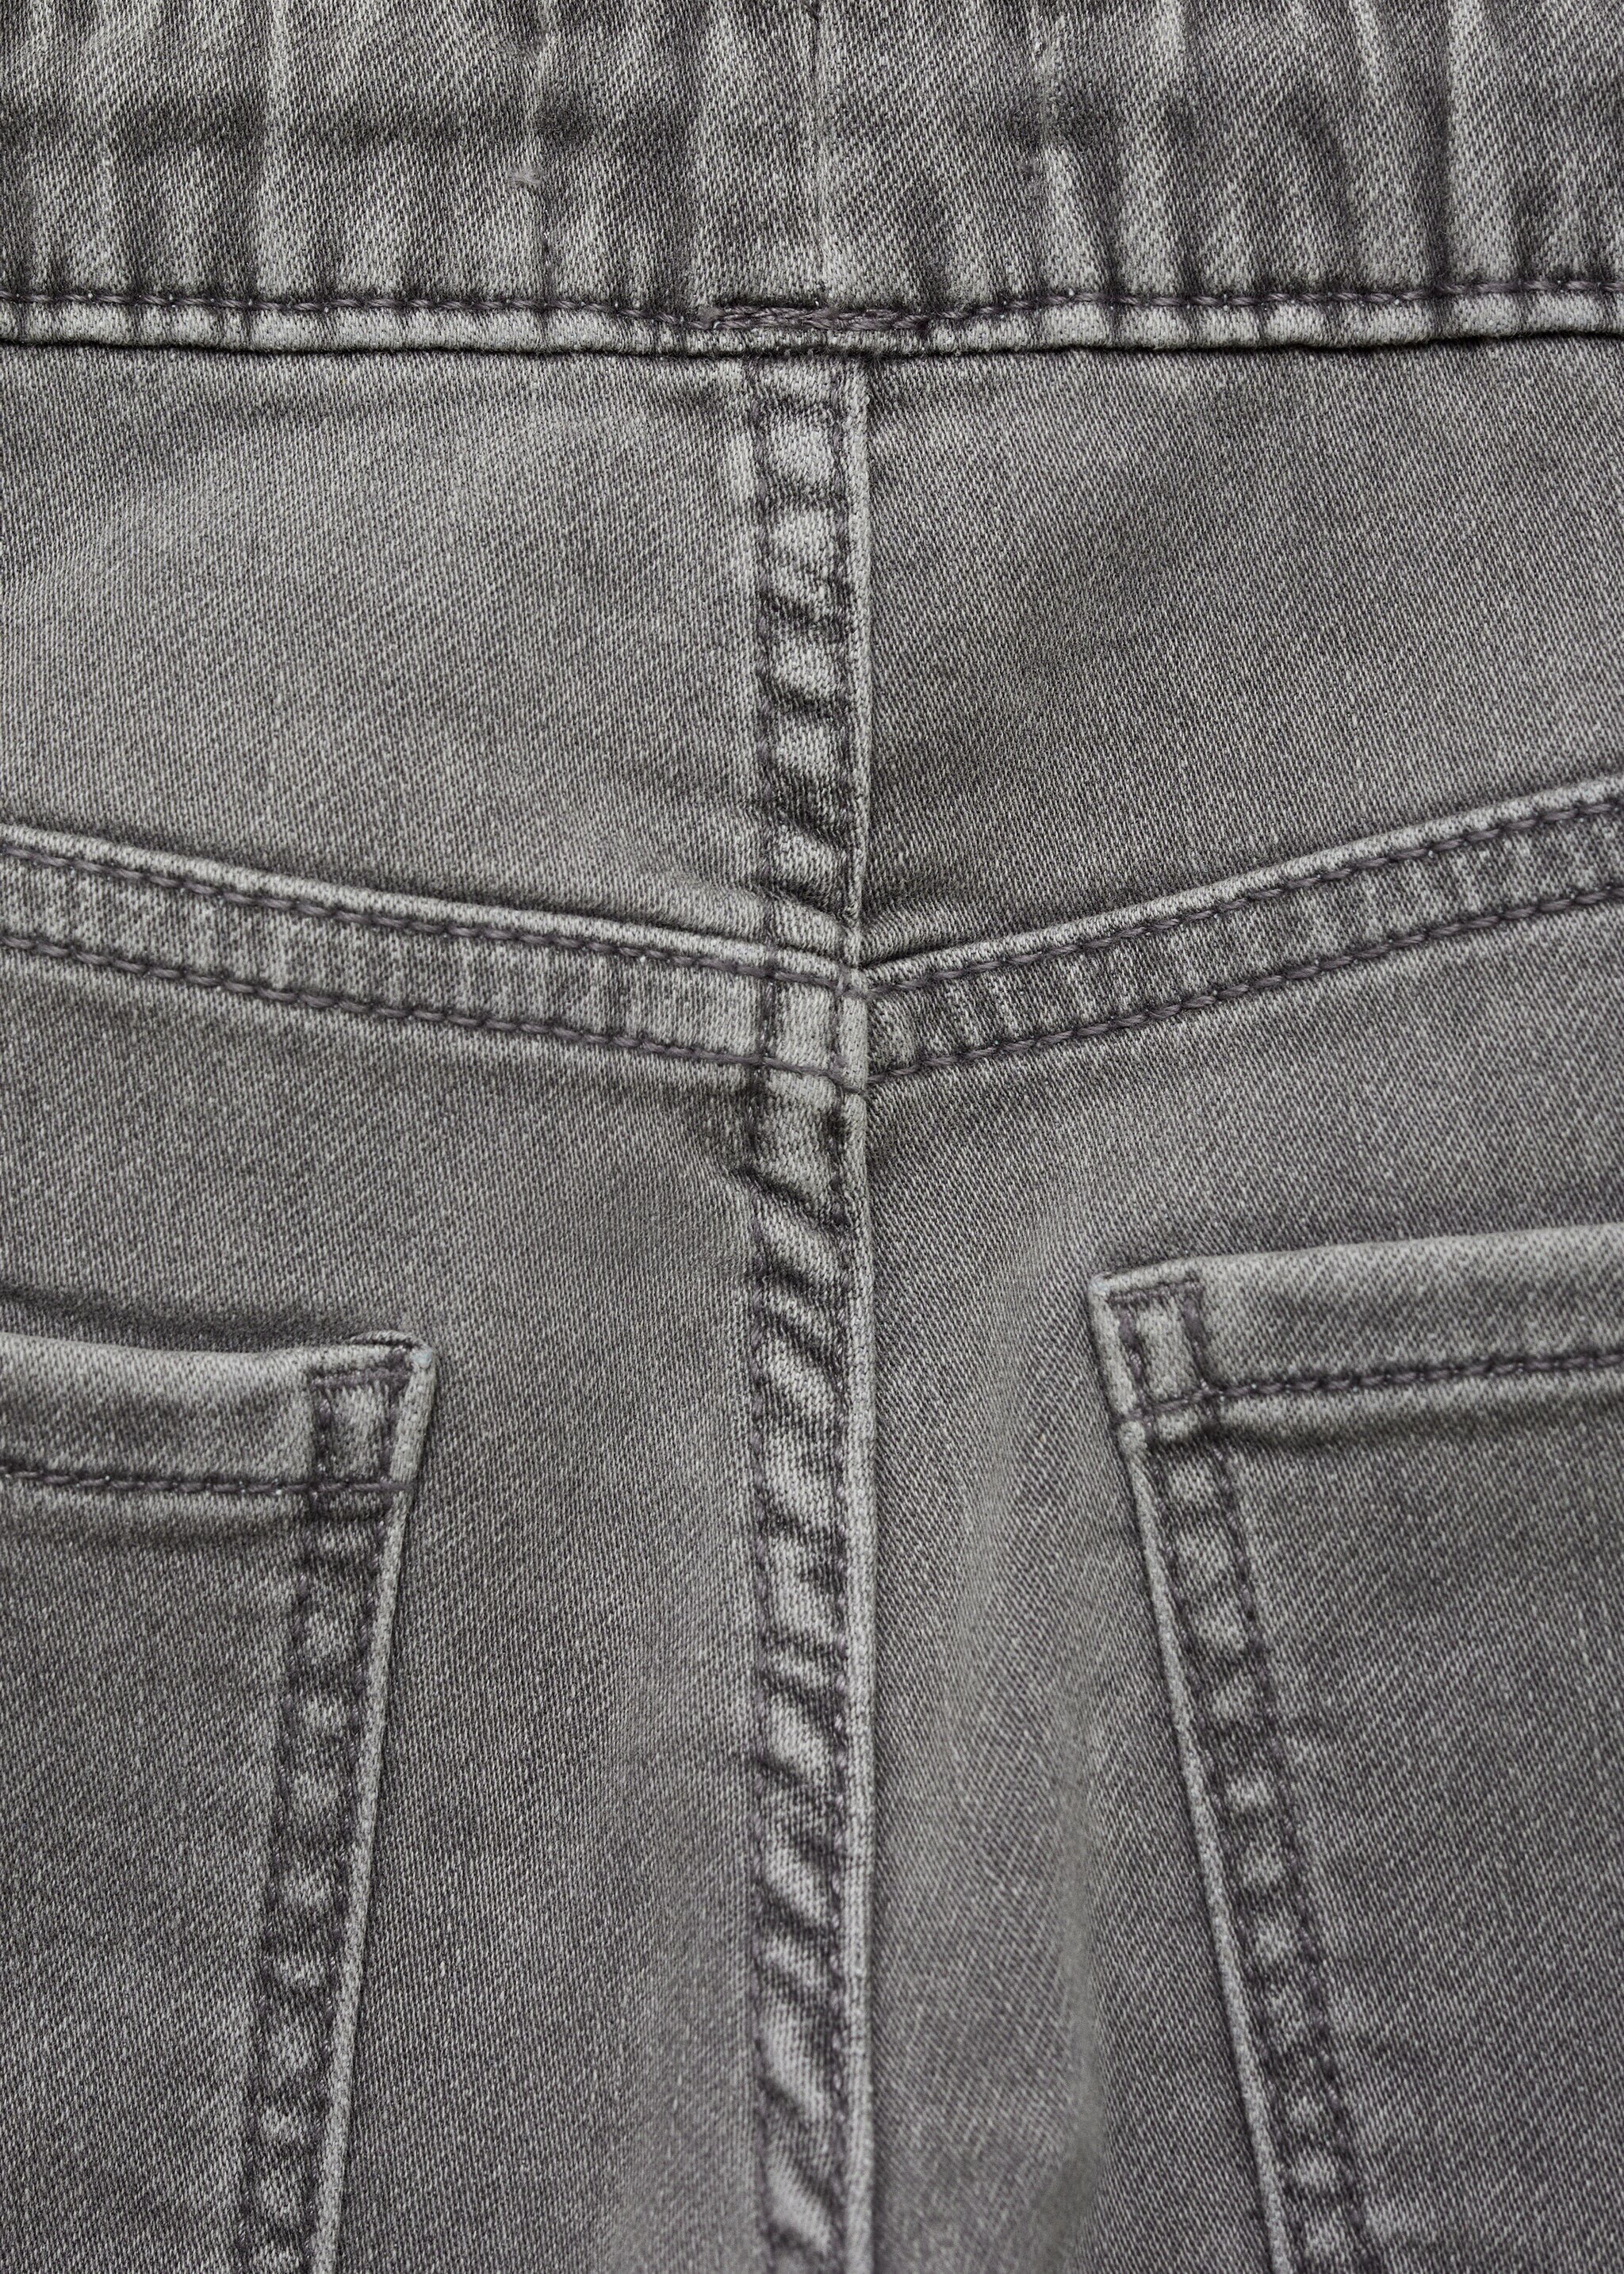 Jeans cintura elástica - Pormenor do artigo 0